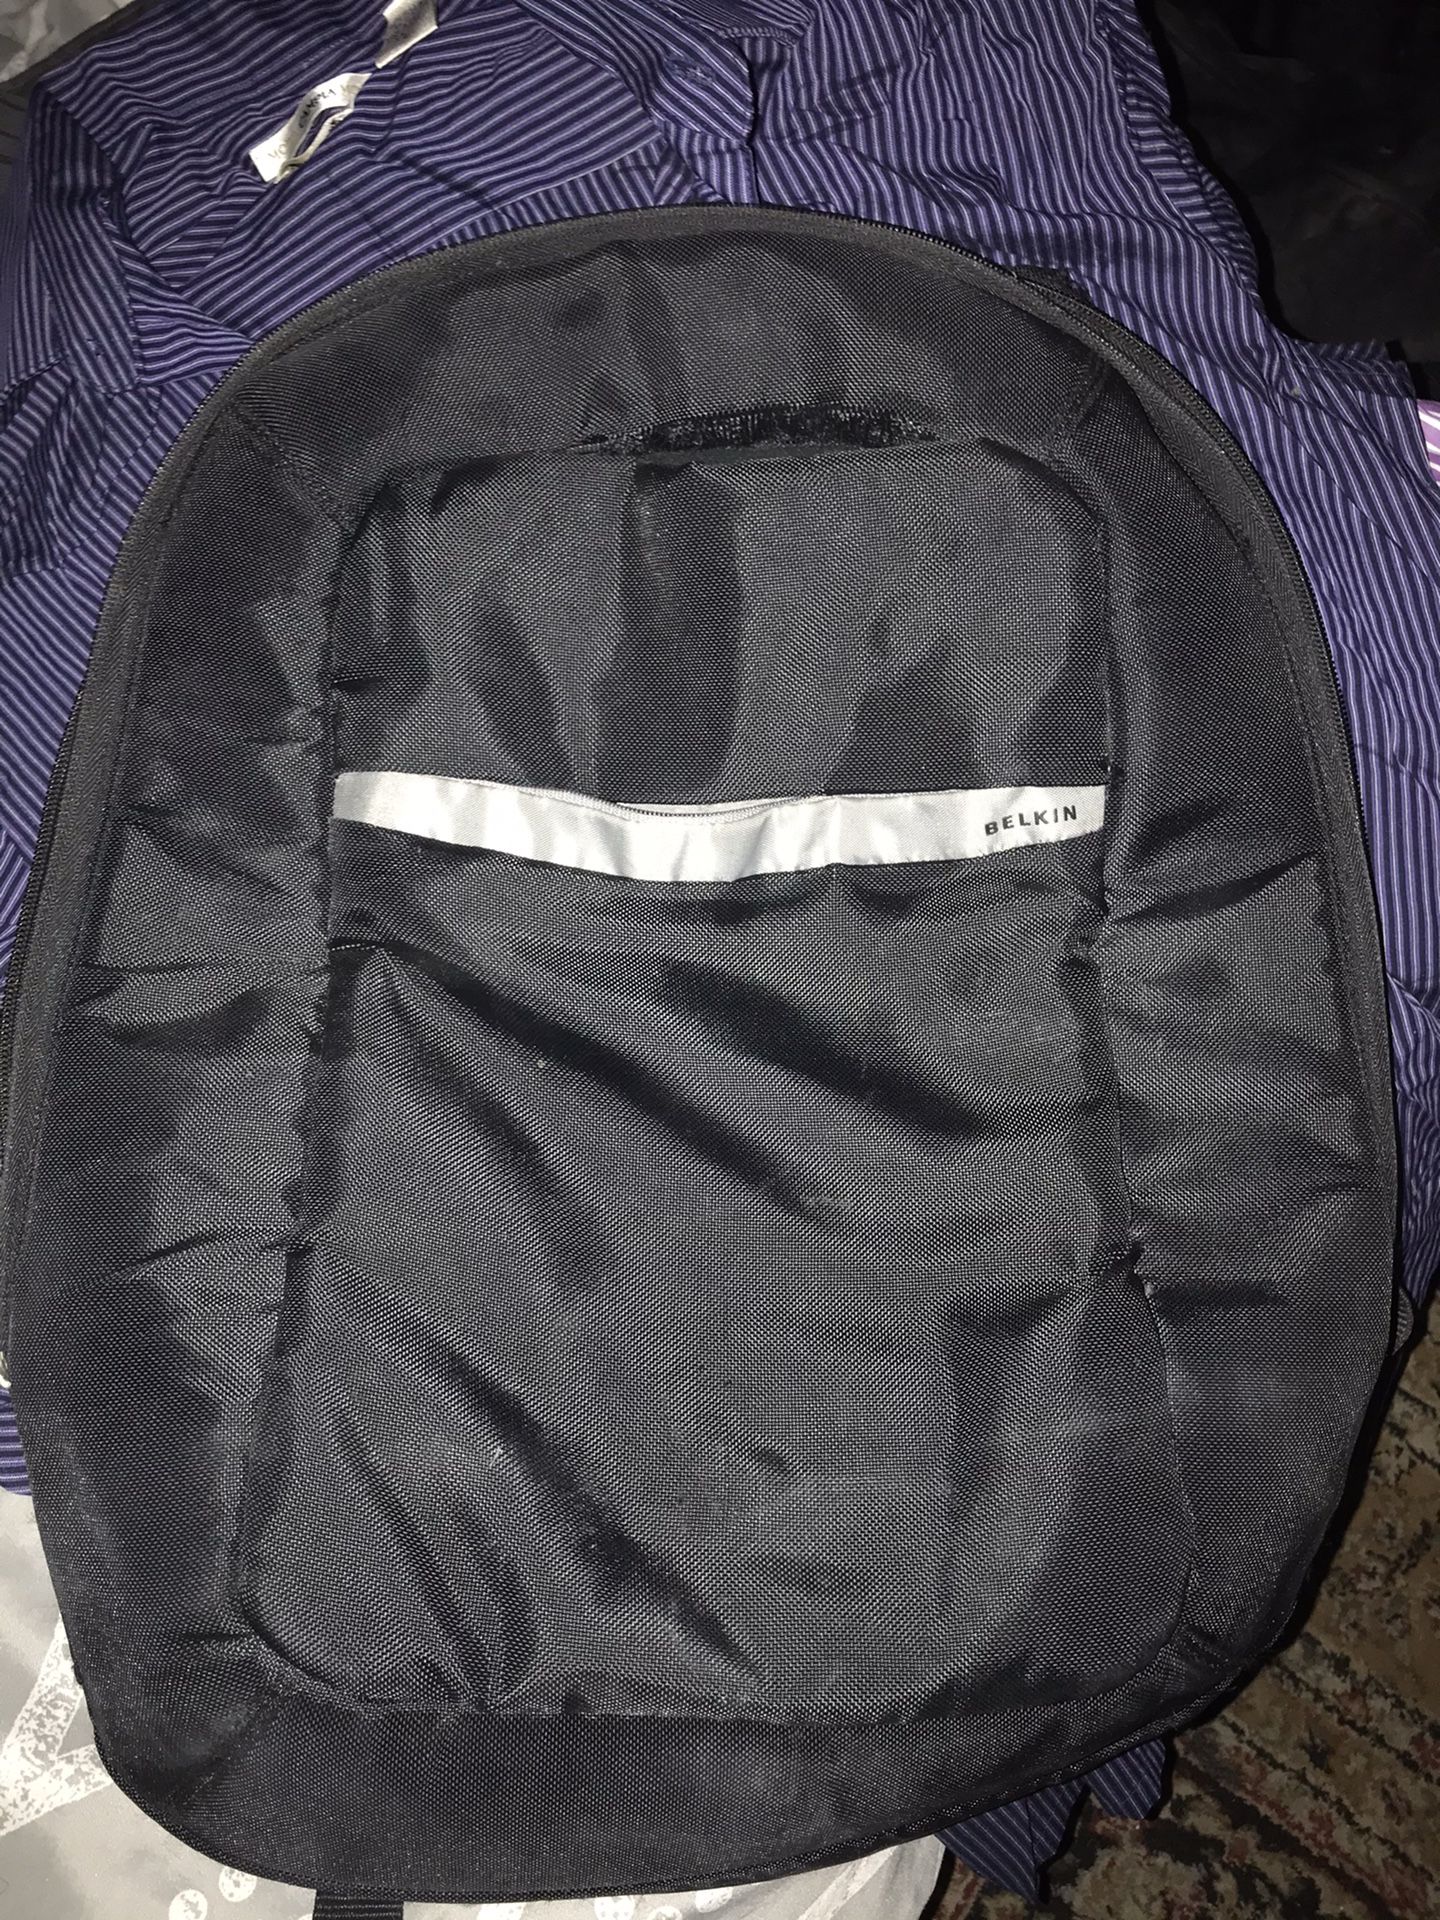 Belkin Laptop Backpack *HAS TEARS*